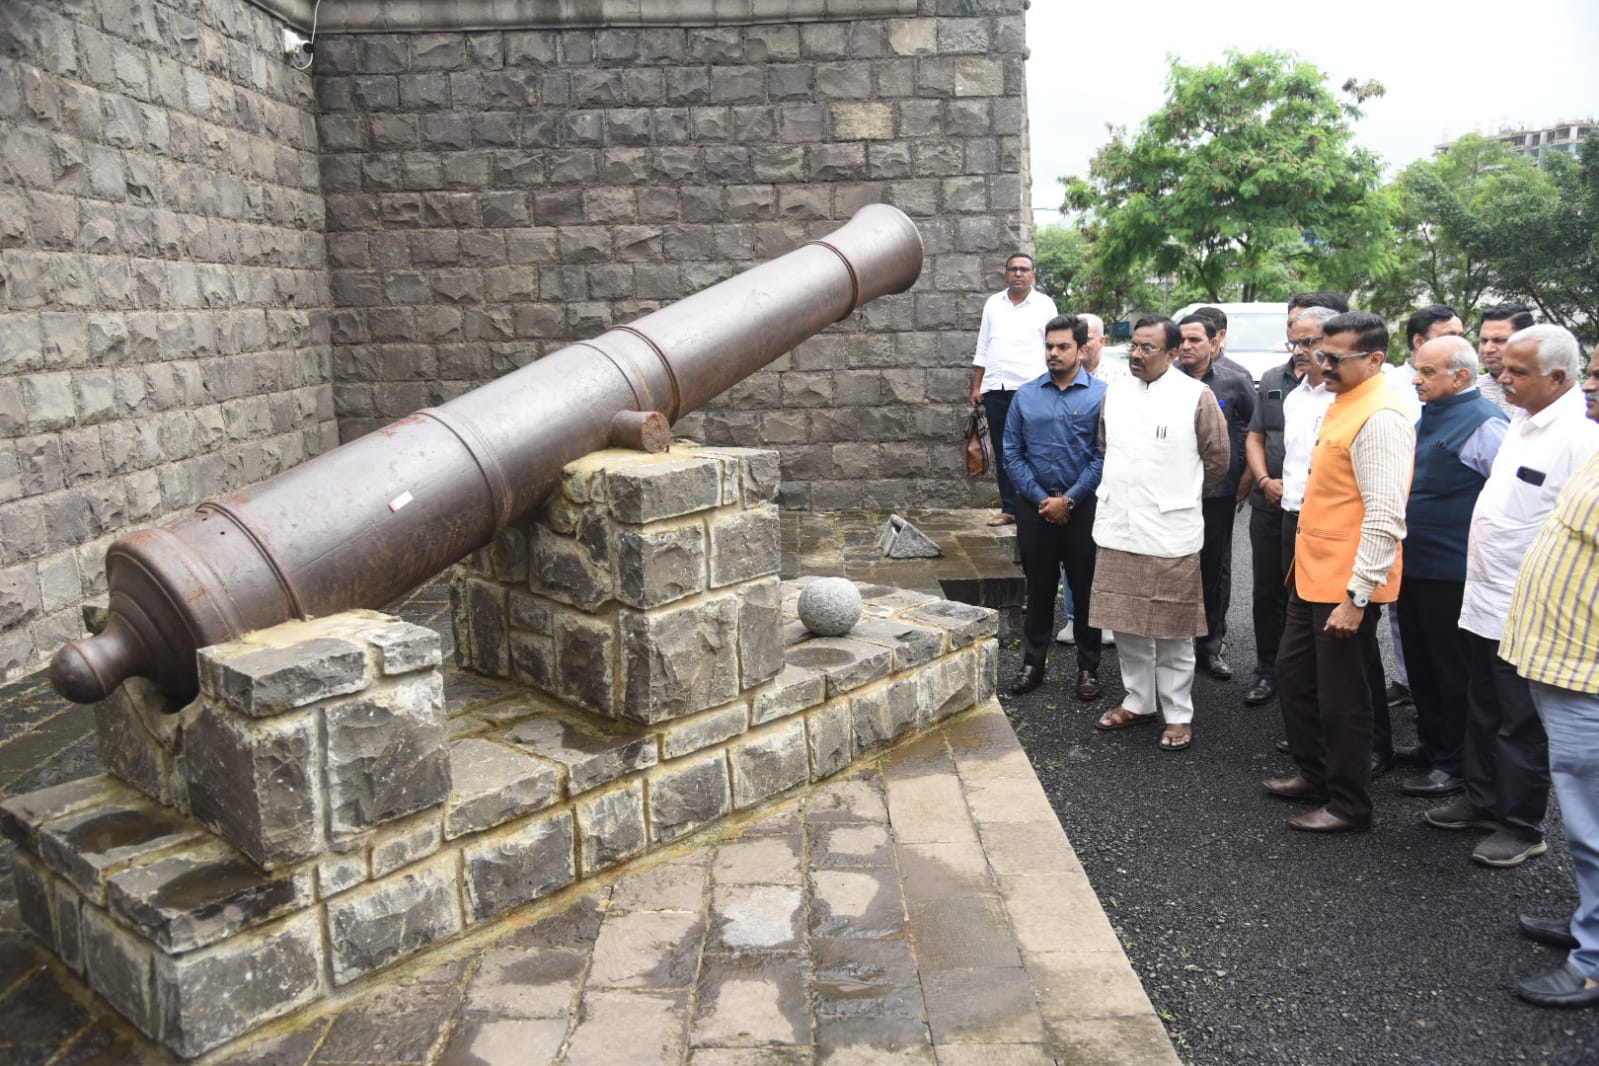 मुंबईत छत्रपती शिवाजी महाराजांच्या जीवनावर आधारित भव्य संग्रहालय उभारणार- सांस्कृतिक कार्यमंत्री सुधीर मुनगंटीवार